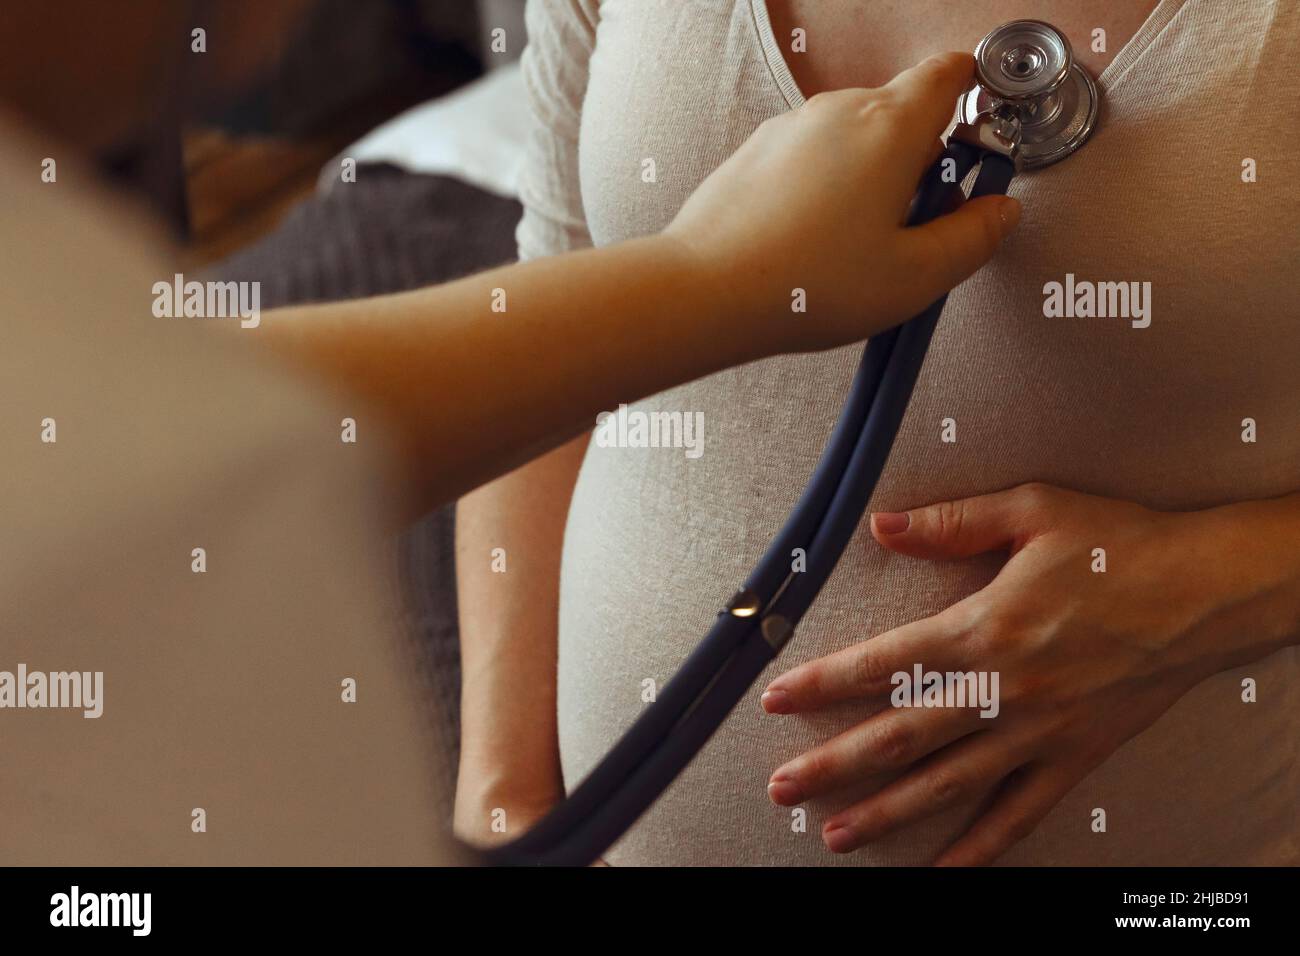 Médecin écoutant le rythme cardiaque de la femme enceinte avec stéthoscope lors d'un rendez-vous de soins prénatals à l'hôpital, dose de culture.Maladie cardiaque pendant la grossesse Banque D'Images